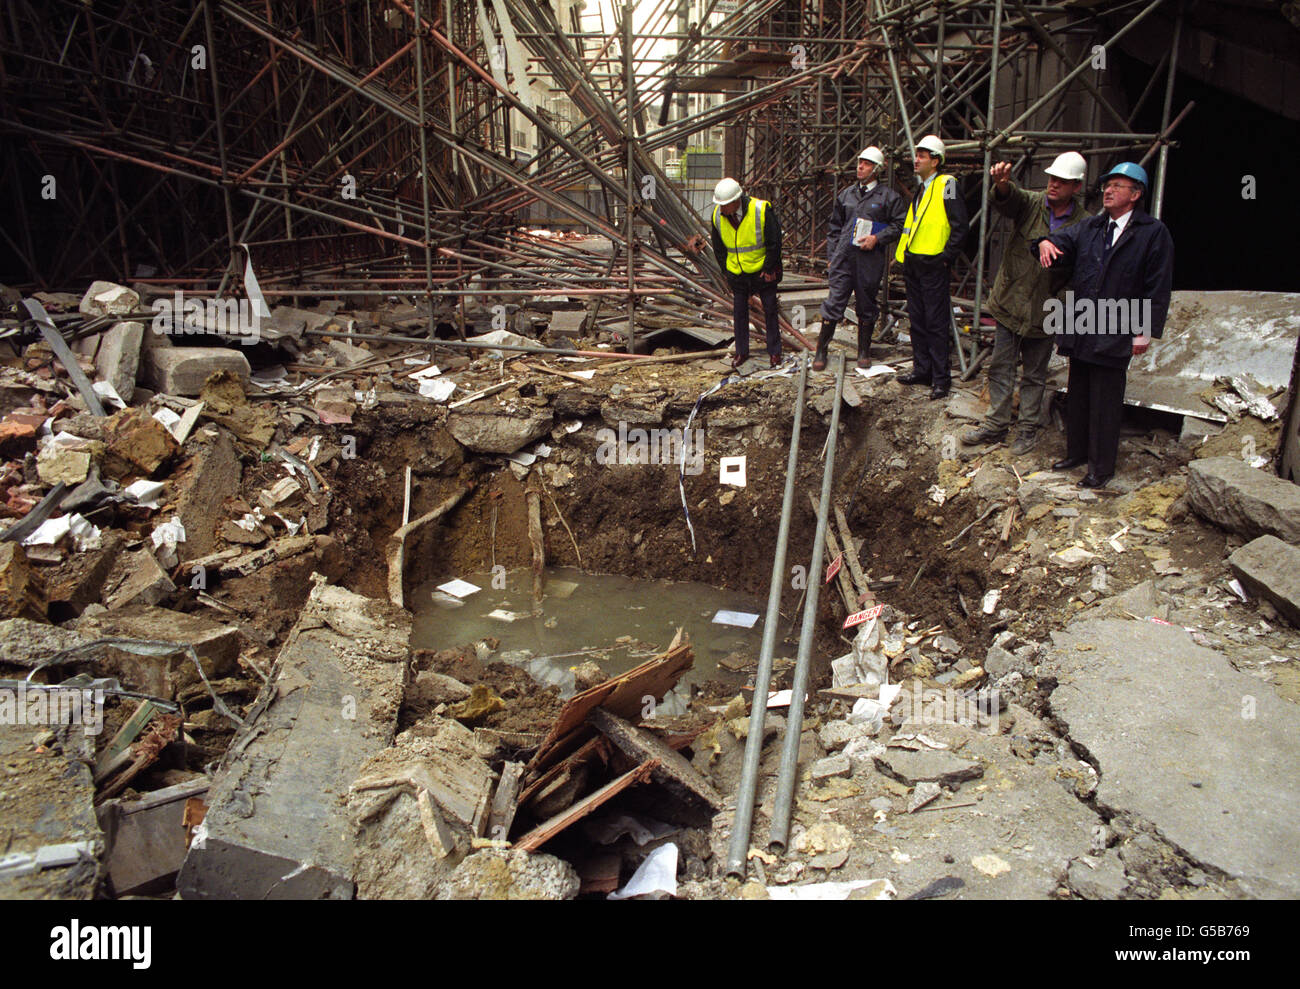 British Crime - Il terrorismo - IRA Terraferma campagna di bombardamenti - Londra - 1991 Foto Stock